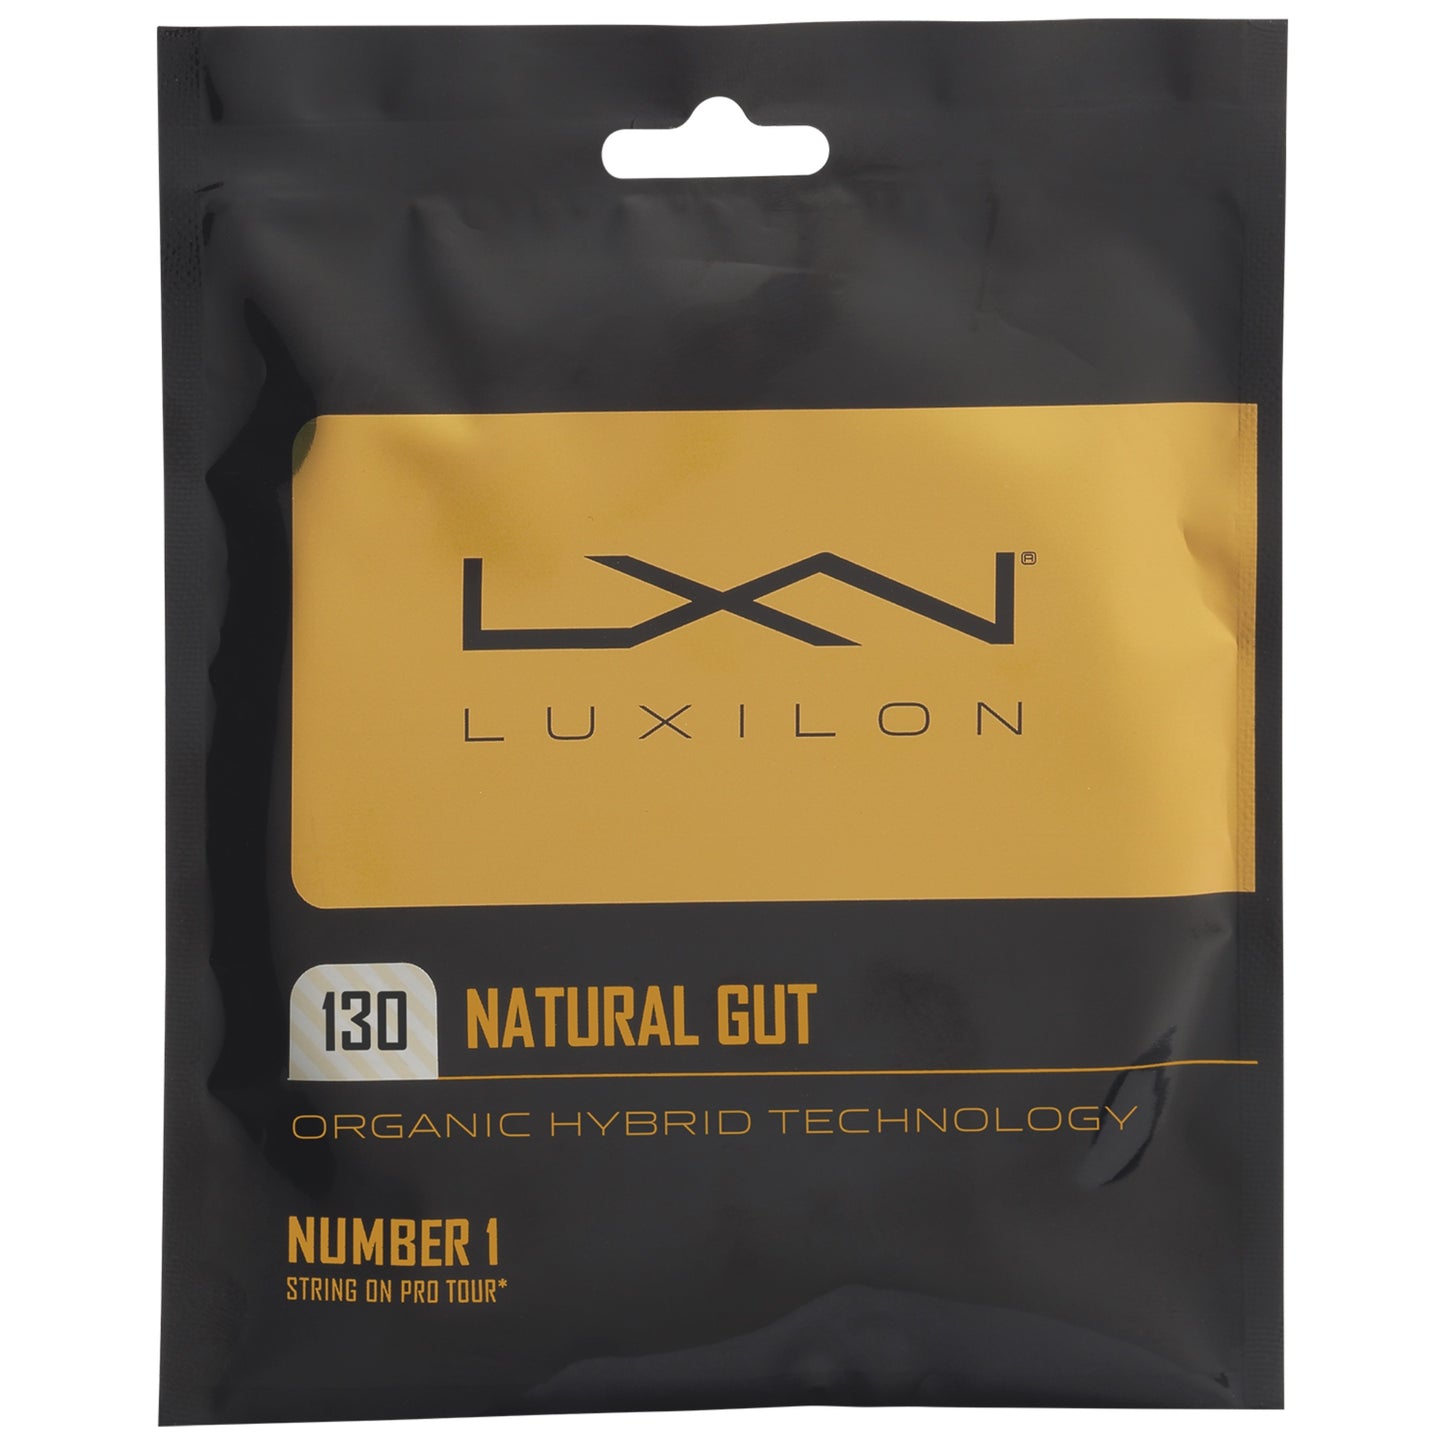 Luxilon Natural Gut 12m/40ft